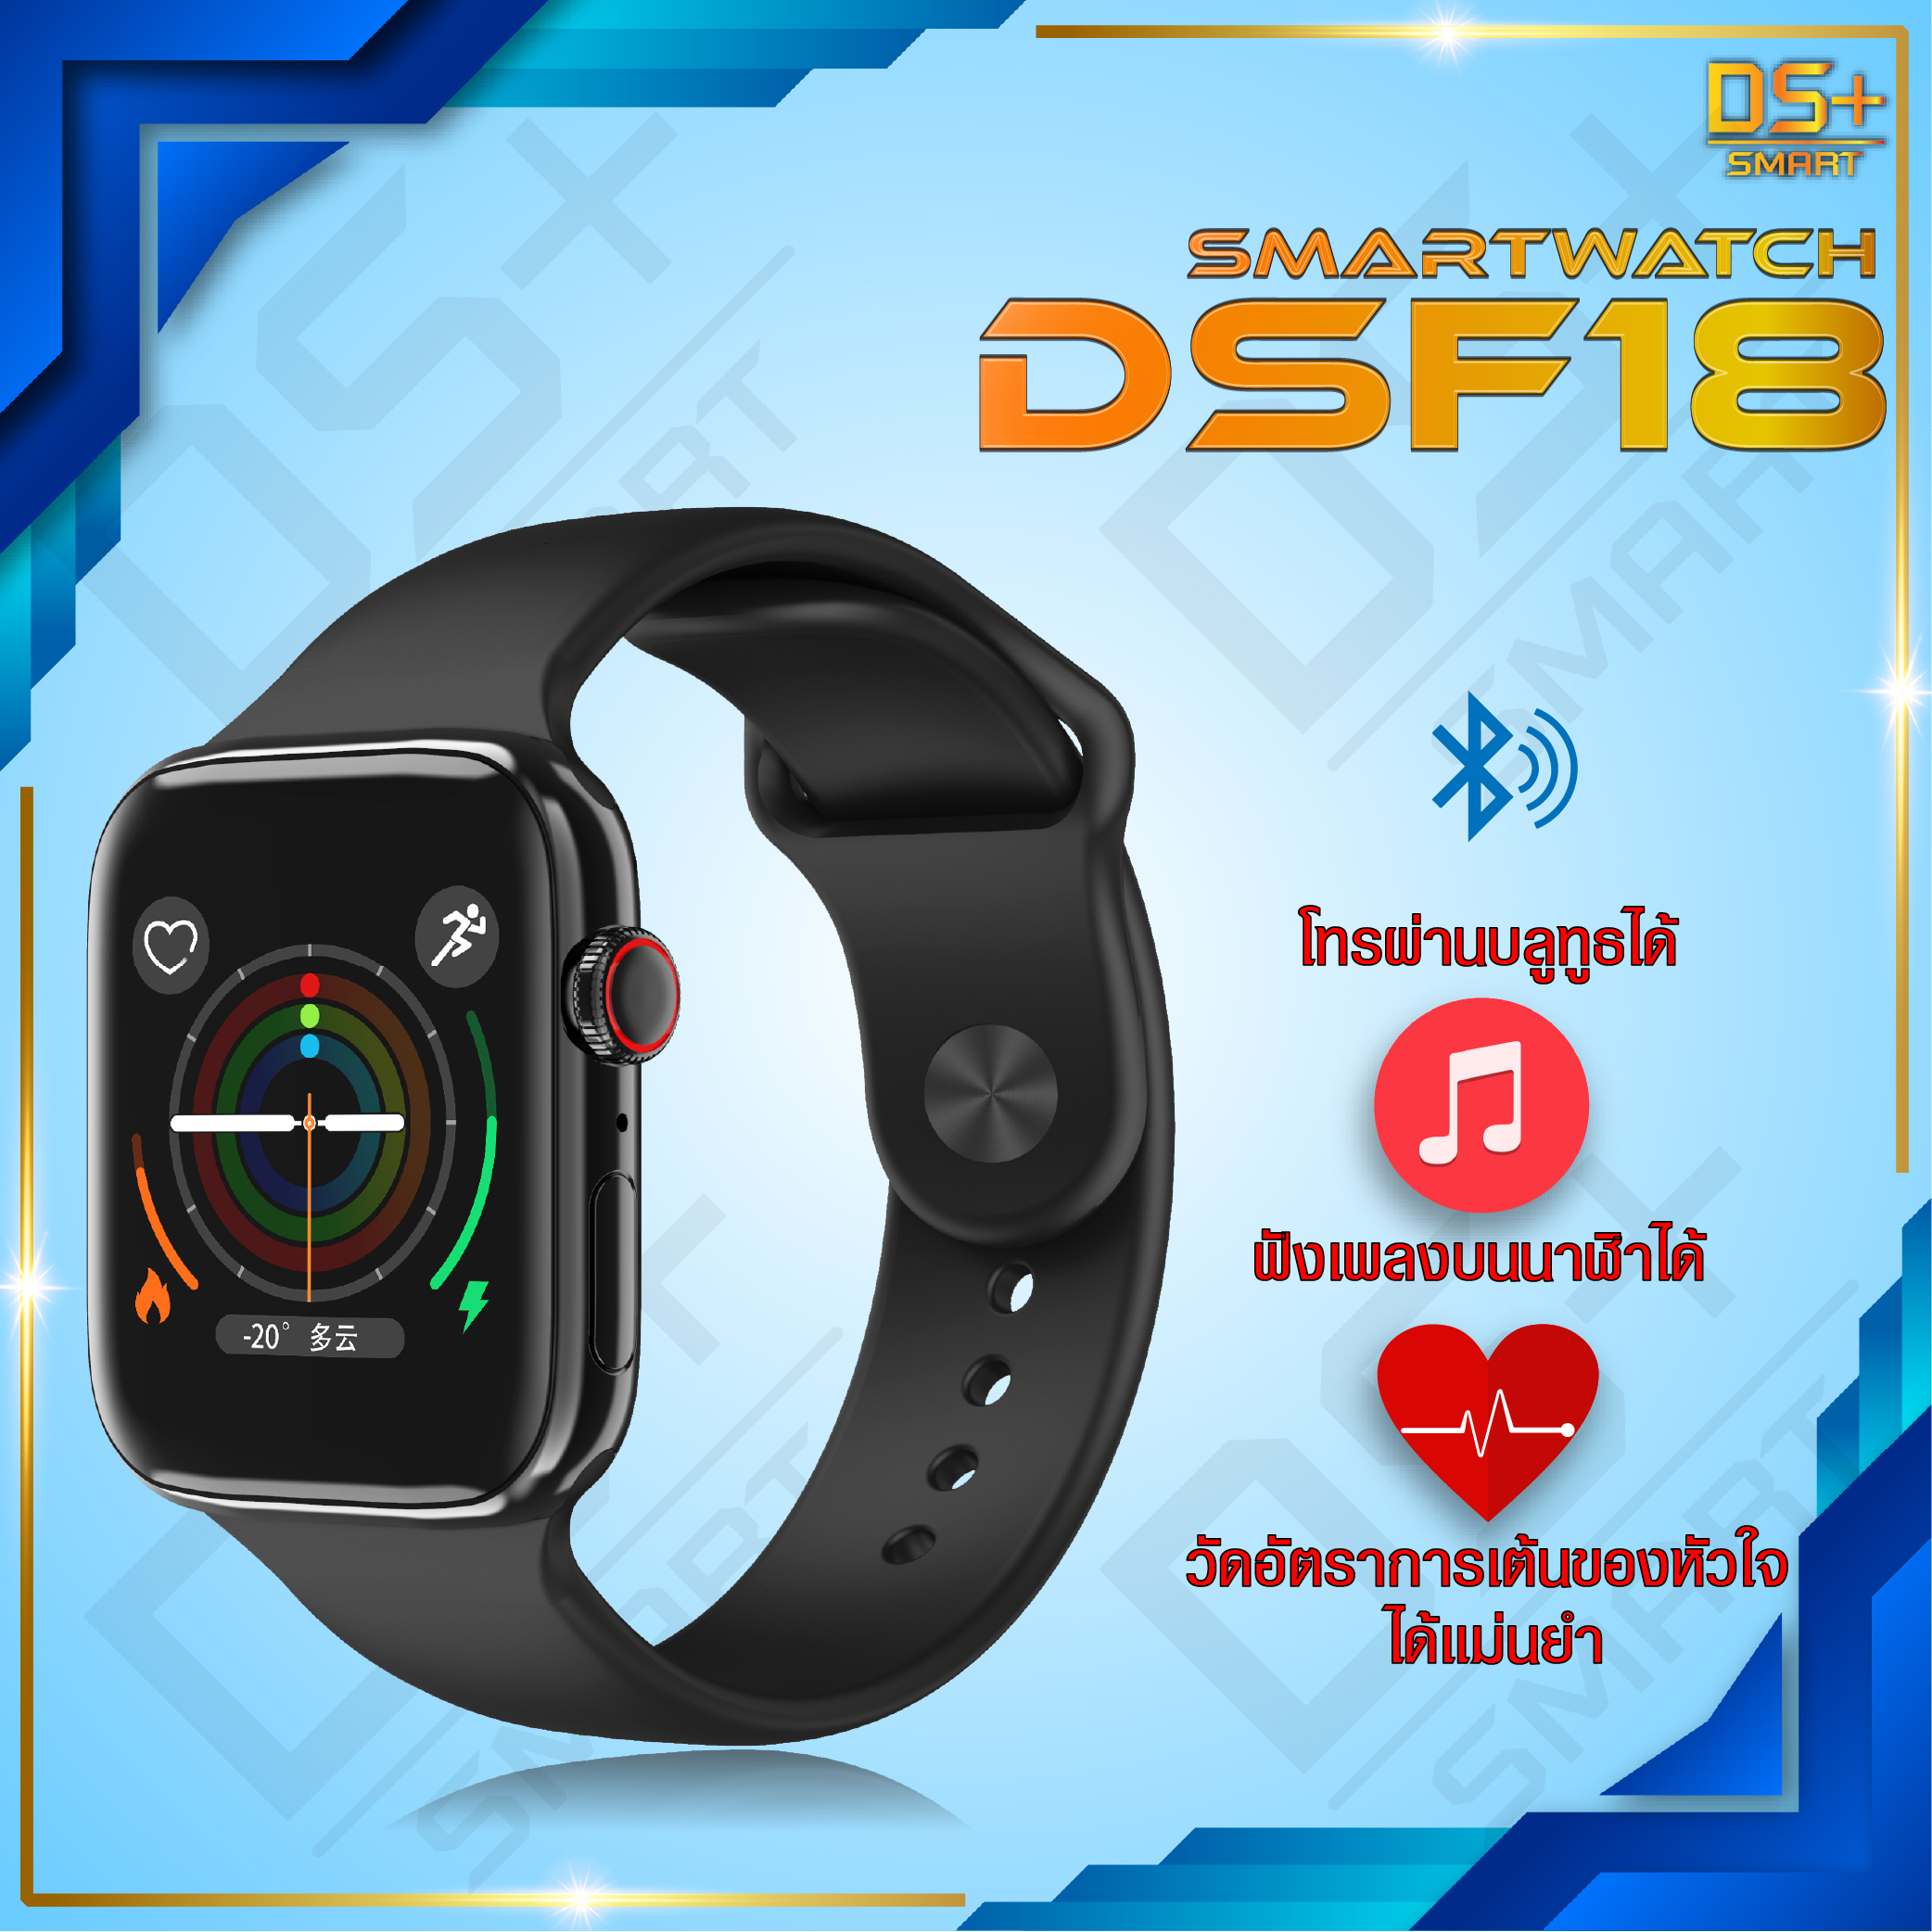 【พร้อมส่ง】Smart Watch F18 นาฬิกาสมาทวอช นาฬิกาอัจฉริยะ นาฬิกาโทรได้ นาฬิกาข้อมือ นาฬิกา นาฬิการุ่นใหม่ นาฬิกาสมาร์ทวอทช์ รุ่น DSF18 โทรผ่านบลูทูธได้ ฟังเพลงได้ มีภาษาไทย Fitness Tracker Smart Bracelet